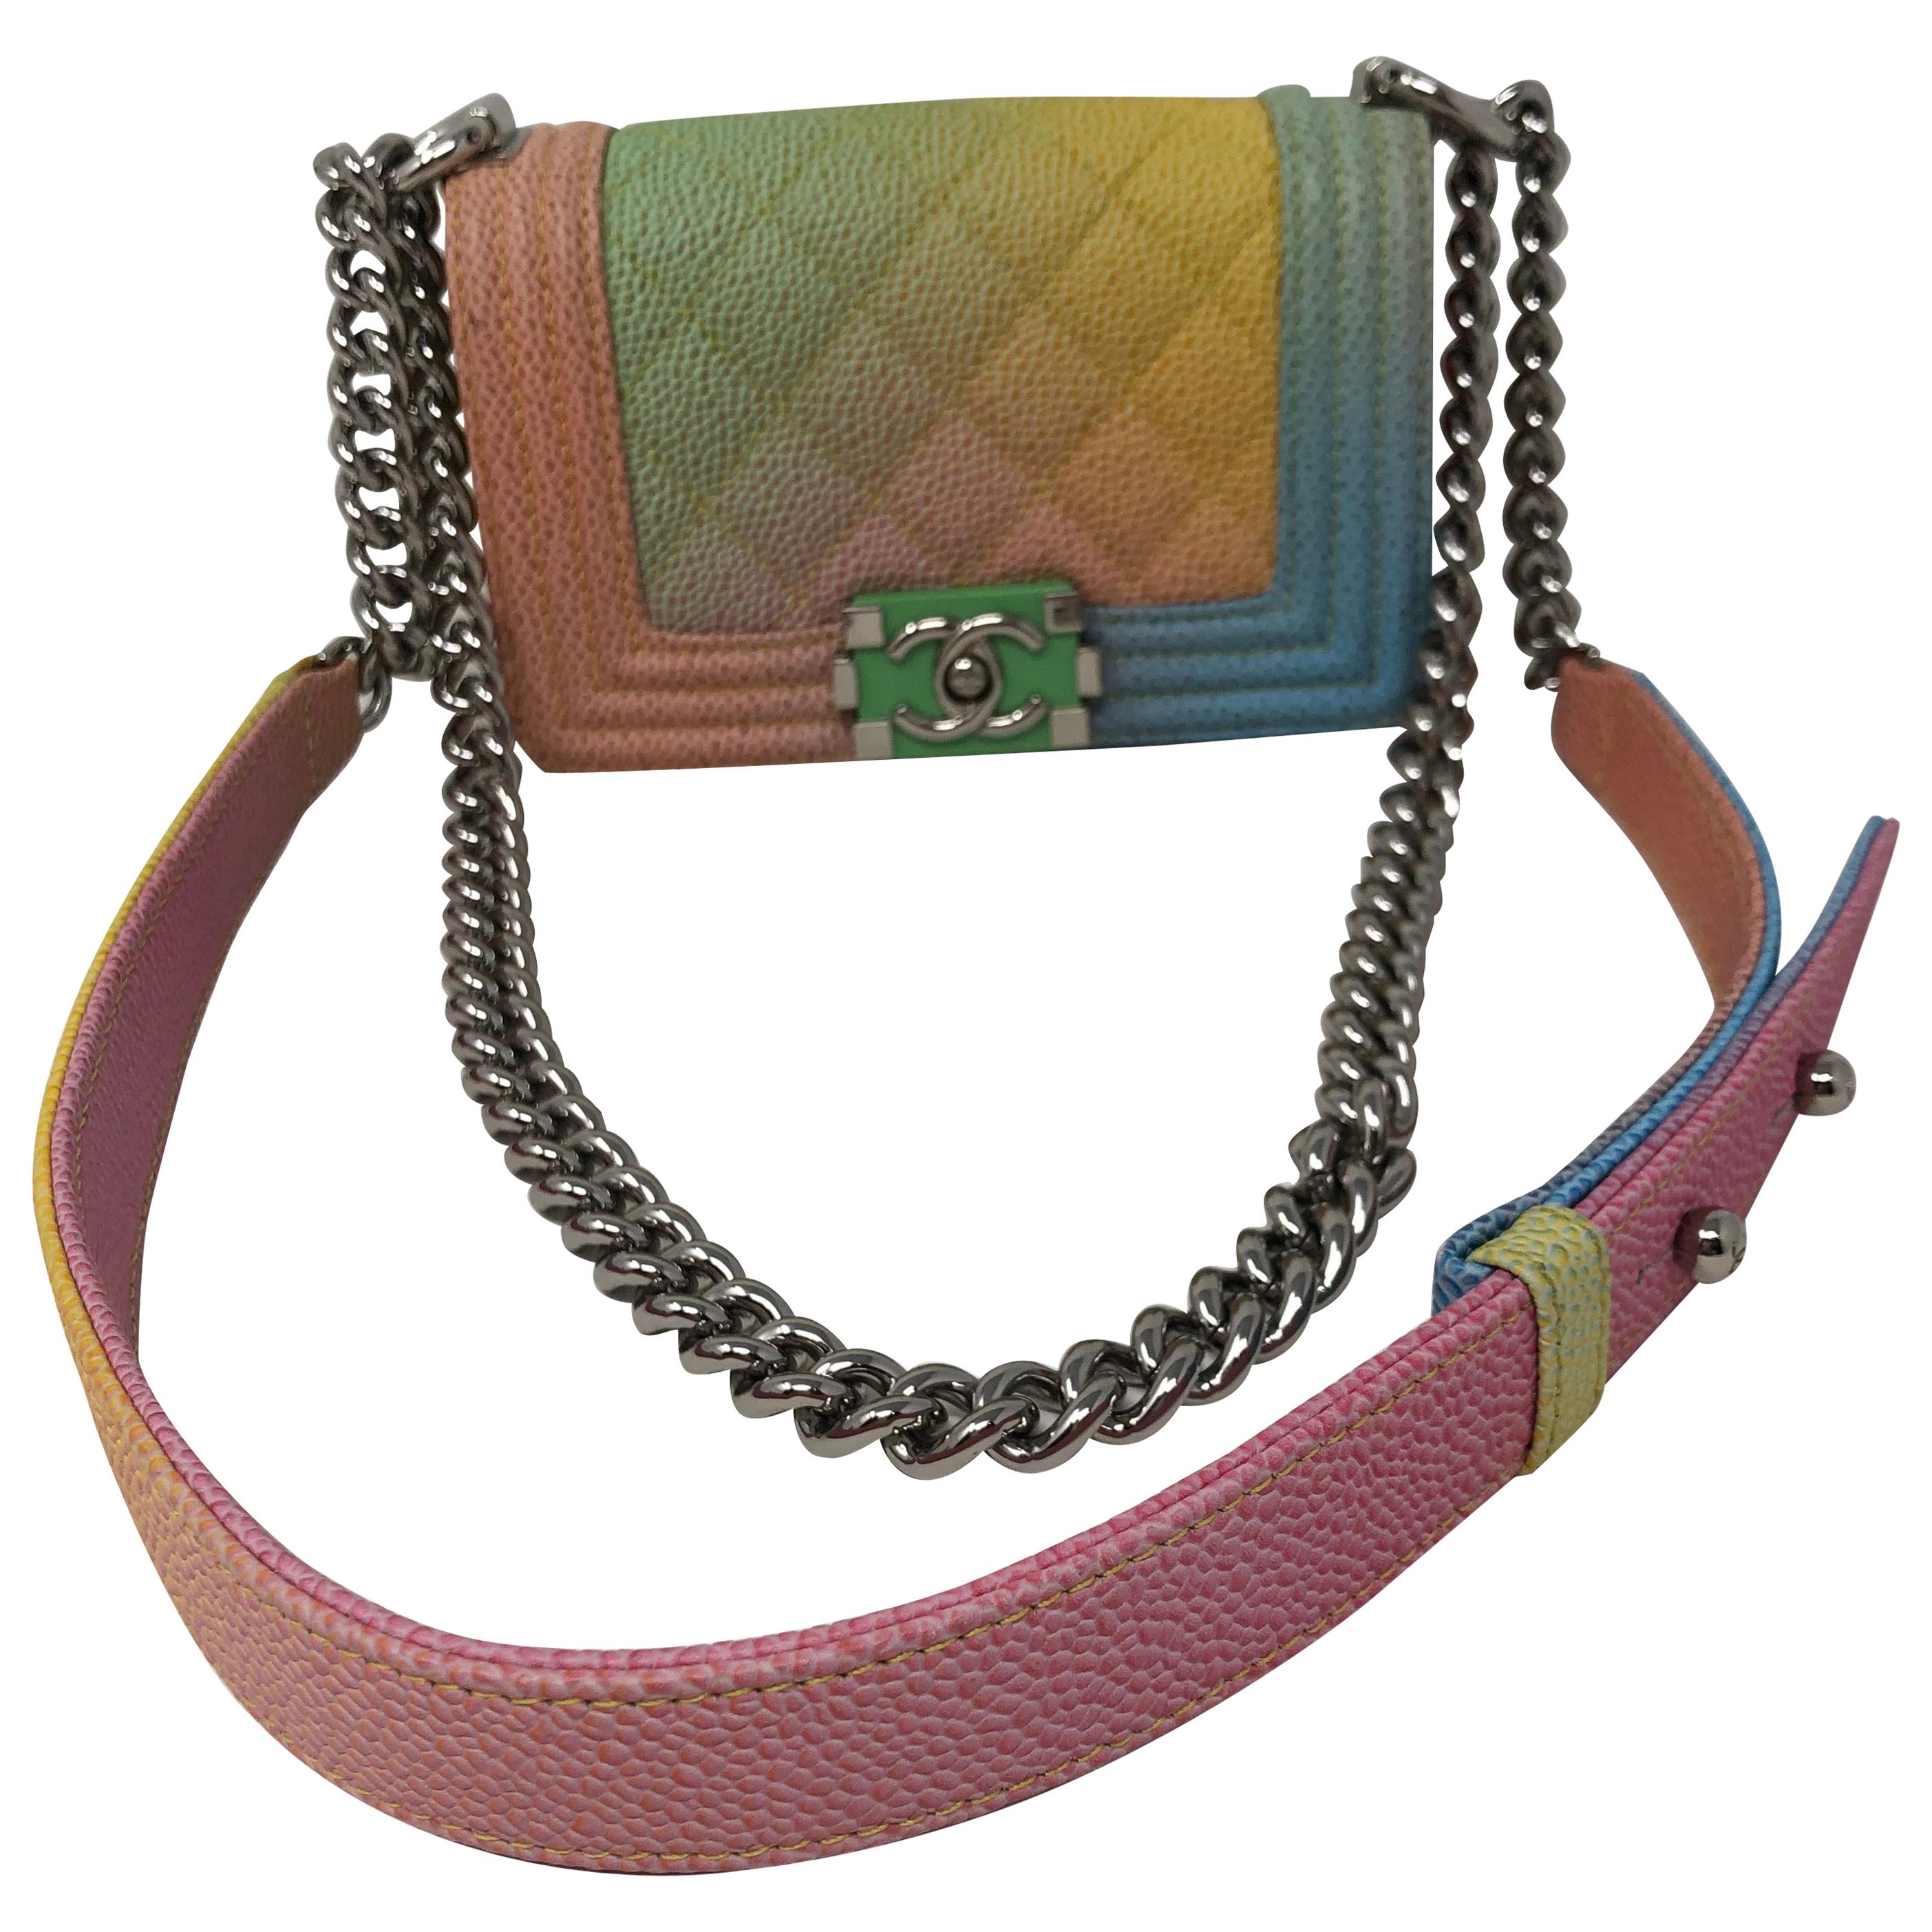 Chanel Mini Rainbow Boy Bag